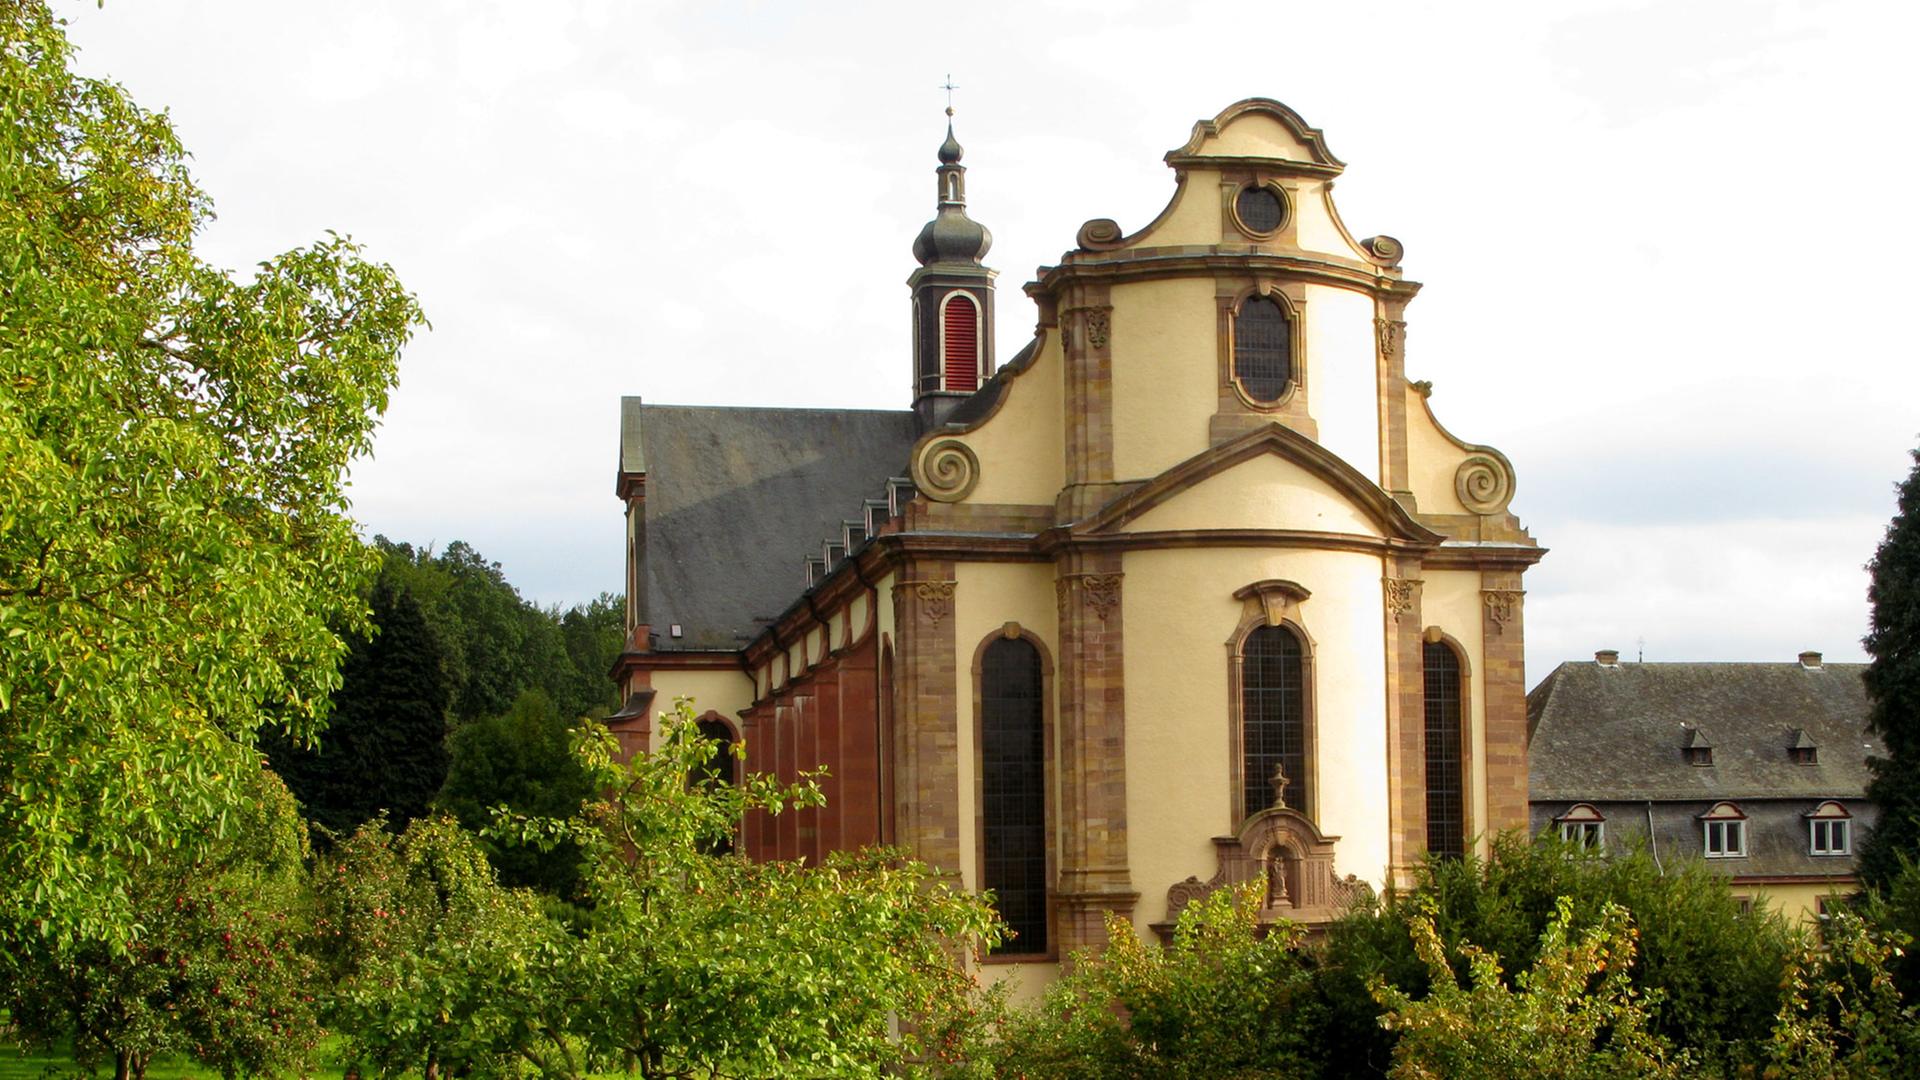 Die Barockkirche der Abtei Himmerod in Grosslittgen. Das Zisterzienser-Kloster wurde im 12. Jahrhundert gegründet.